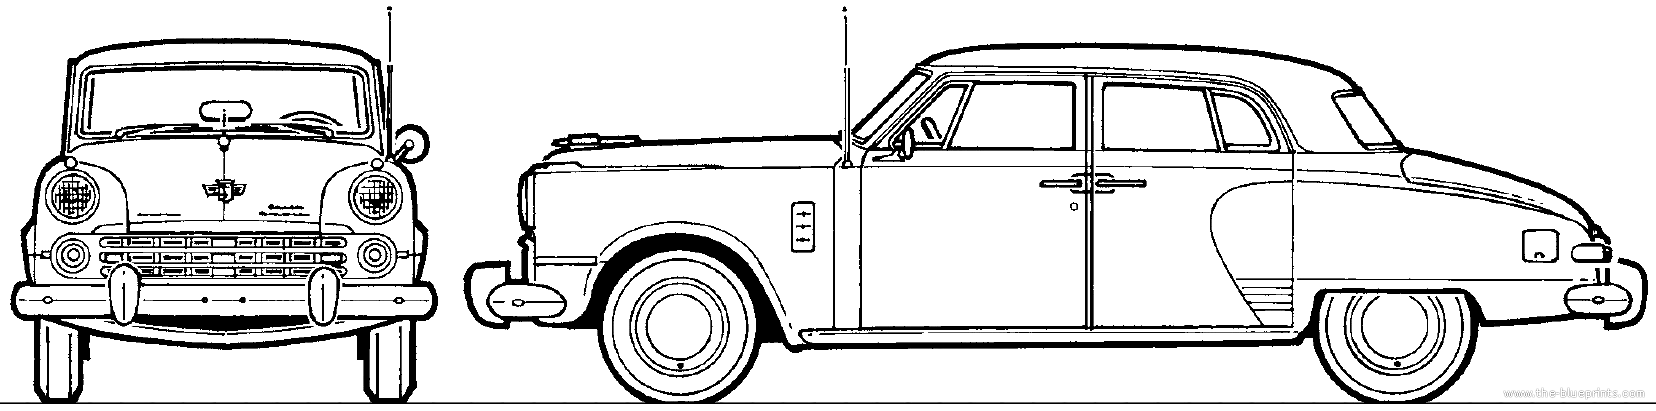 40s Sedan (Huge).png